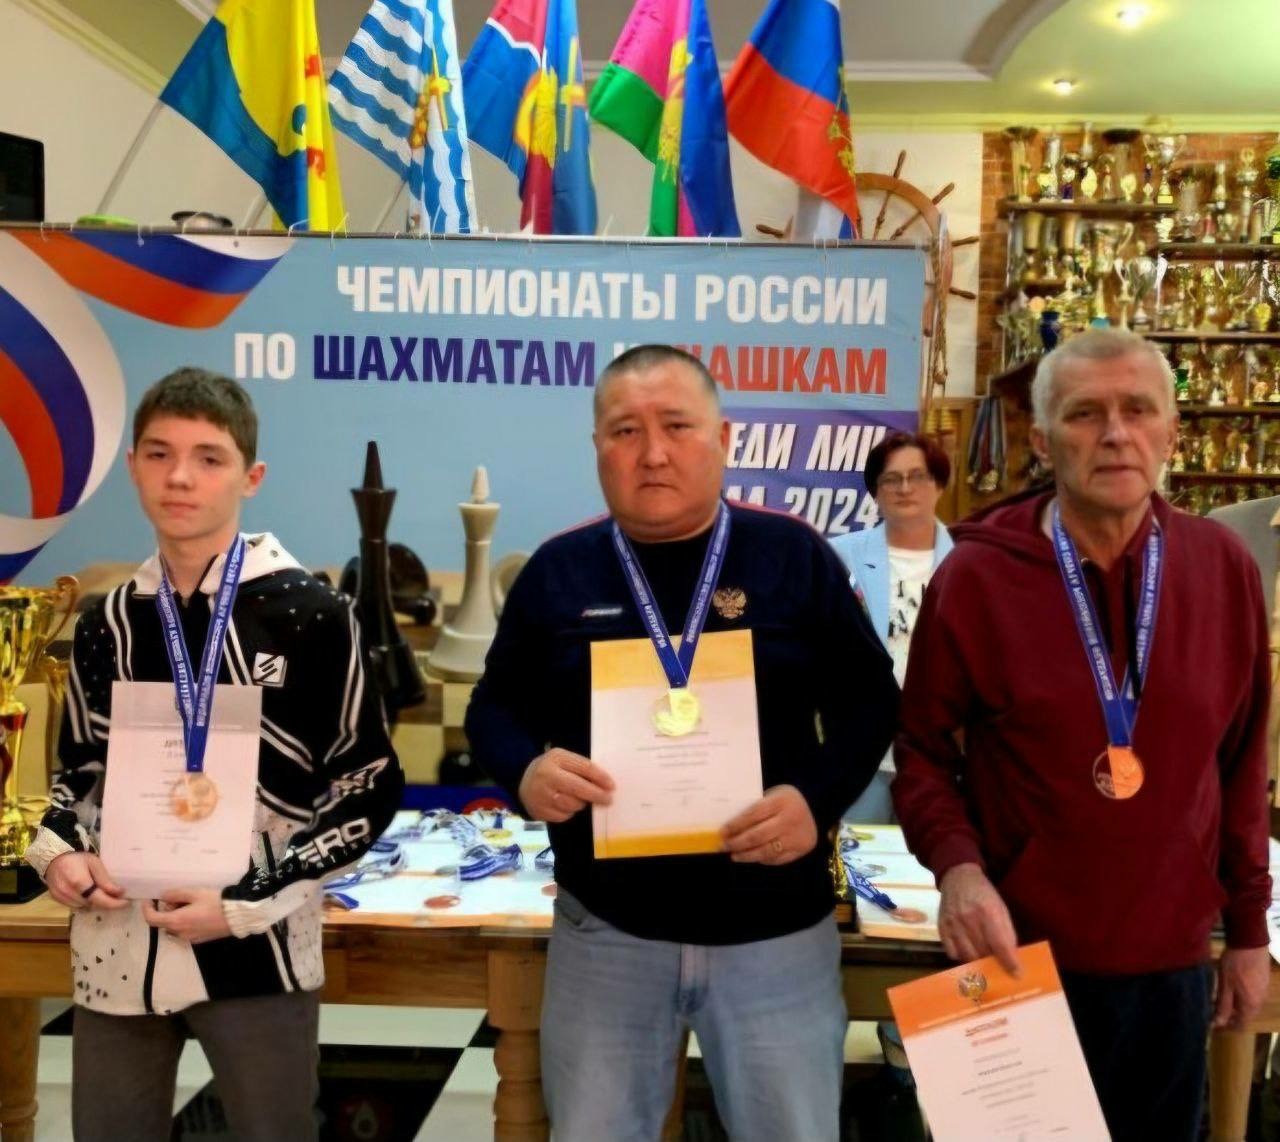 Спортсмен из Бурятии стал чемпионом России по шашкам